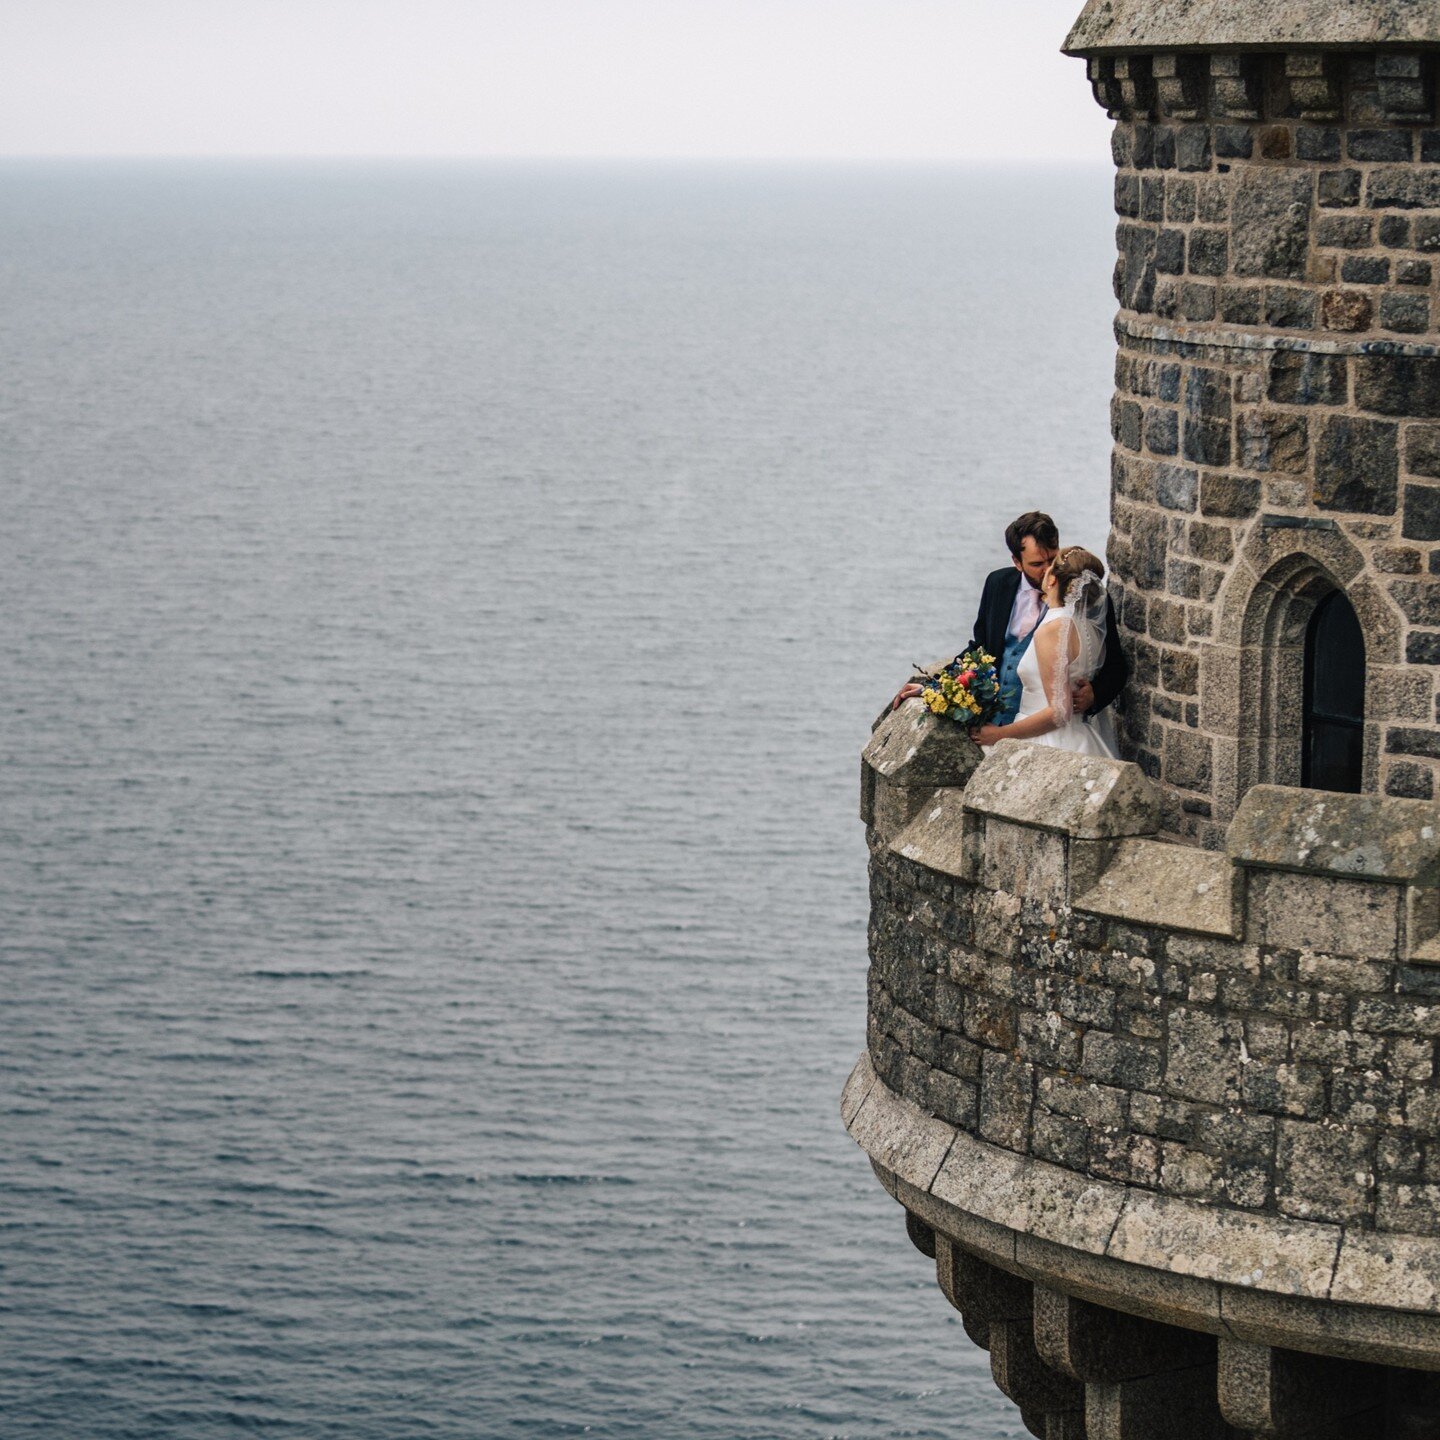 married on the mount #castlewedding #stmichaelsmount #cornwallwedding #cornwallweddingphotographer